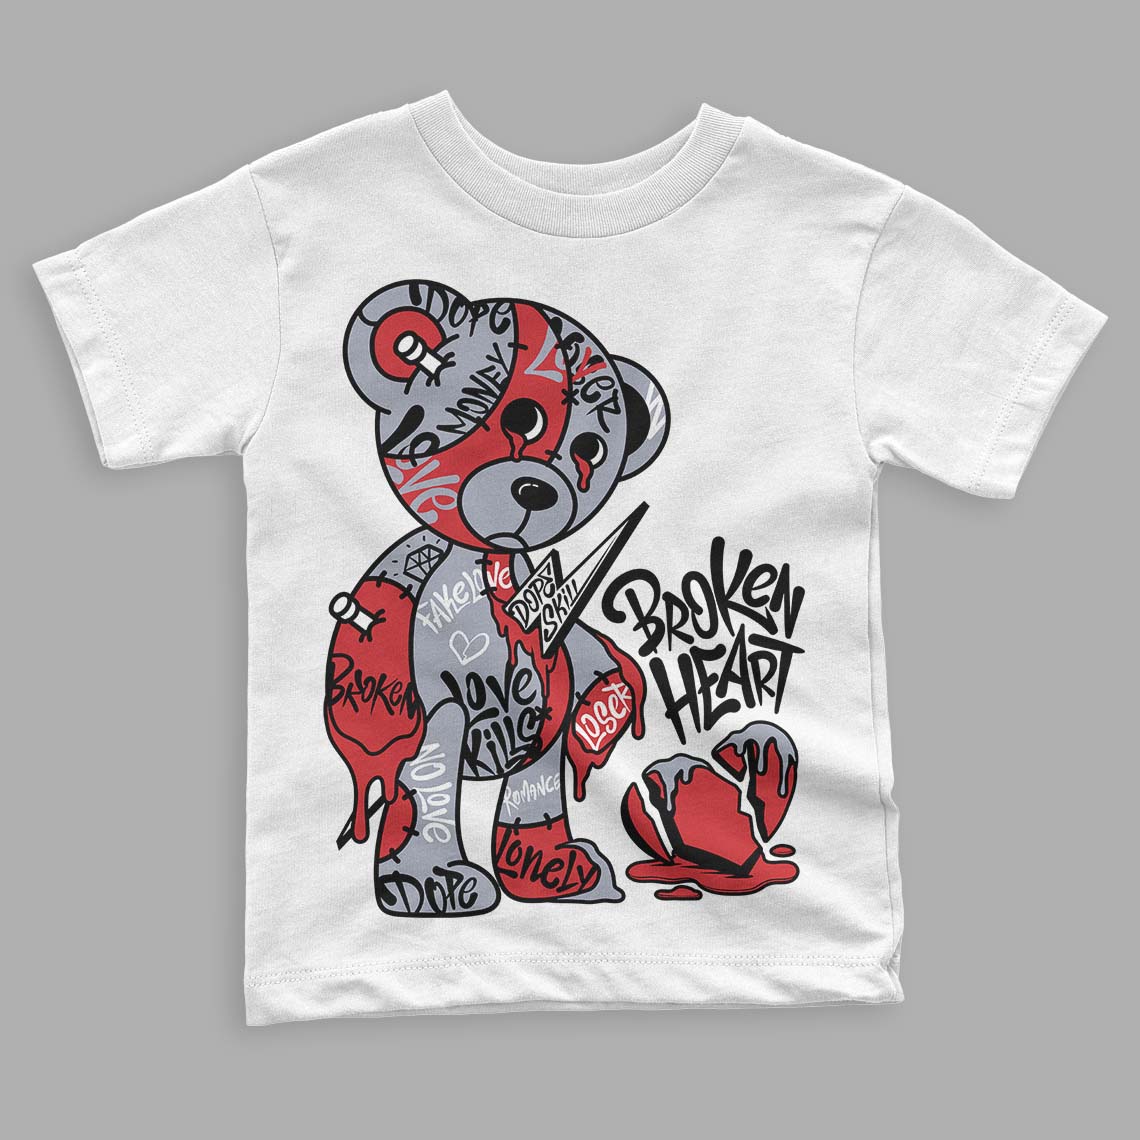 Jordan 4 “Bred Reimagined” DopeSkill Toddler Kids T-shirt Broken Heart Graphic Streetwear - White 